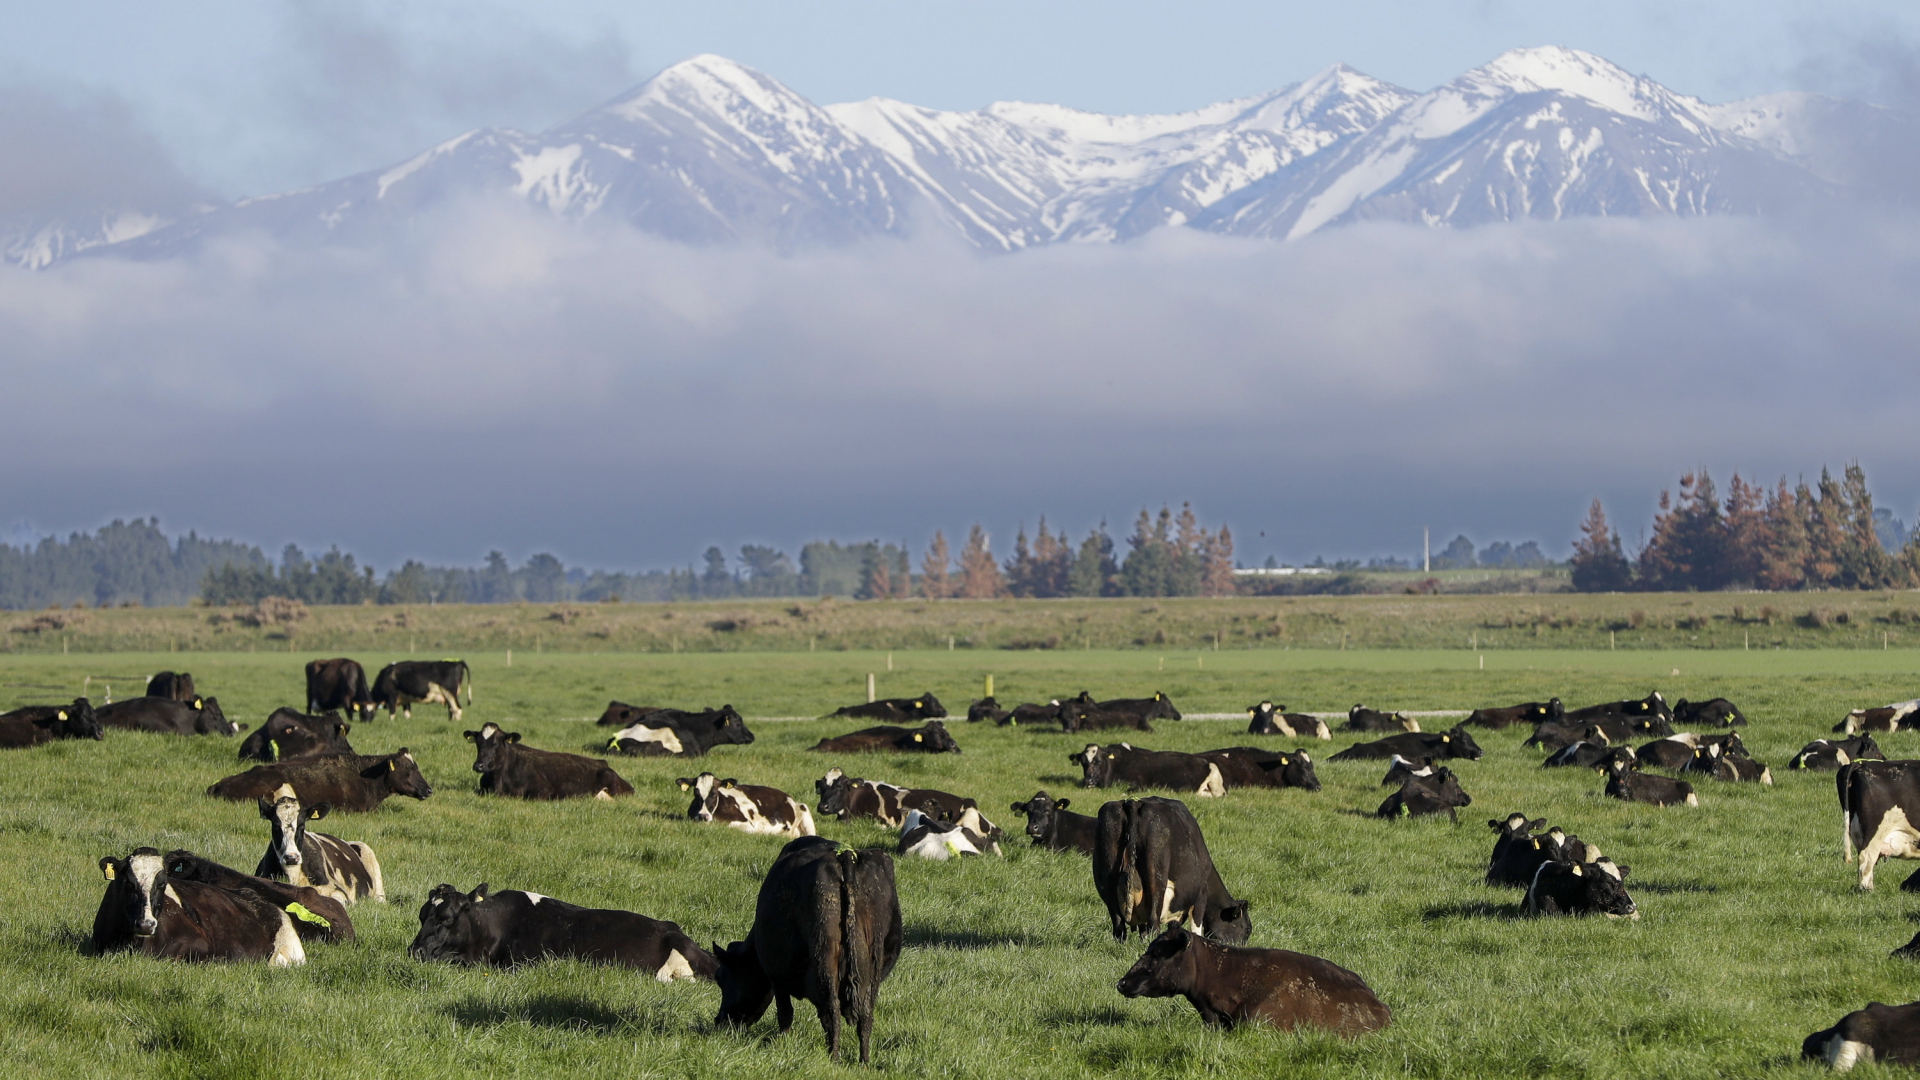 Neuseelands Milchindustrie: Kuhtoilette im Test